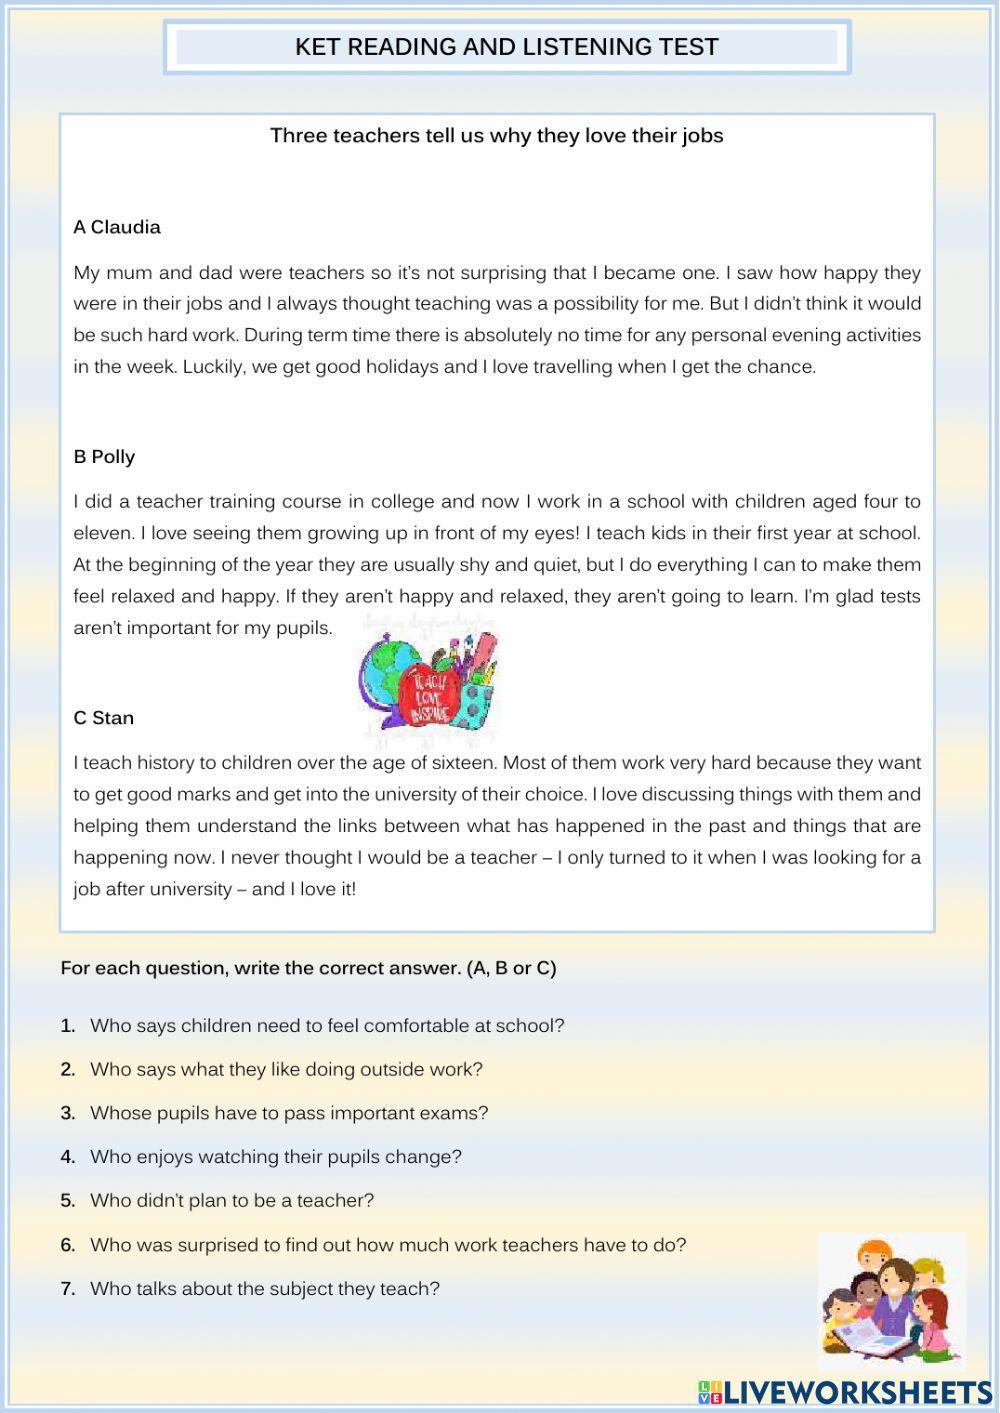 KET Reading and Listening test worksheet | Live Worksheets